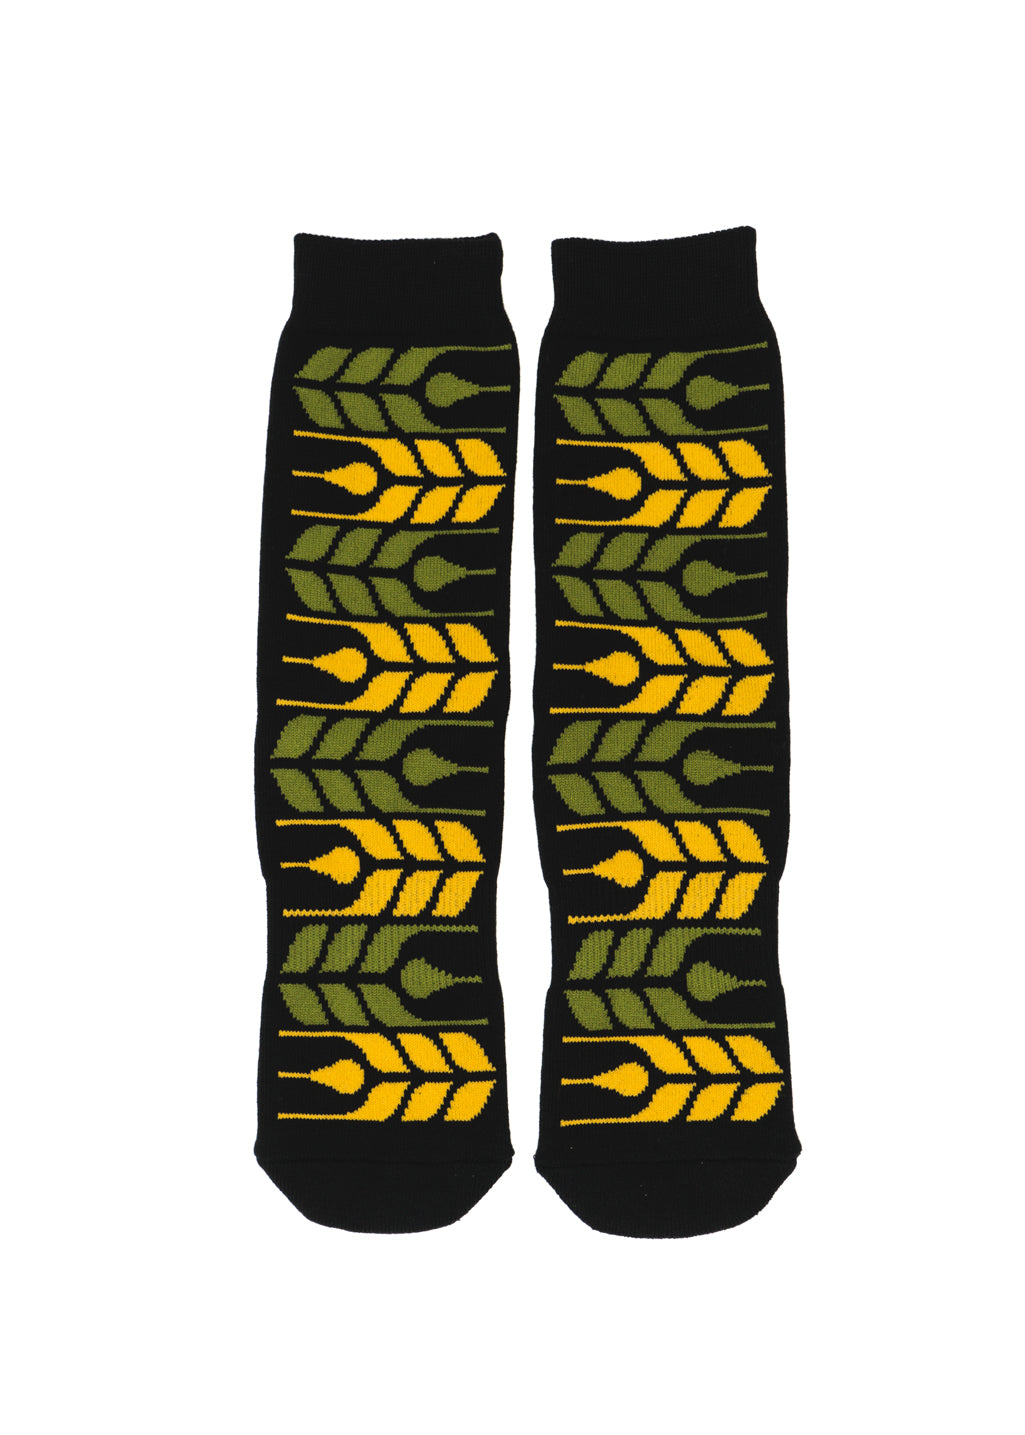 Provincial Grain Socks | Black - Hardpressed Print Studio Inc.